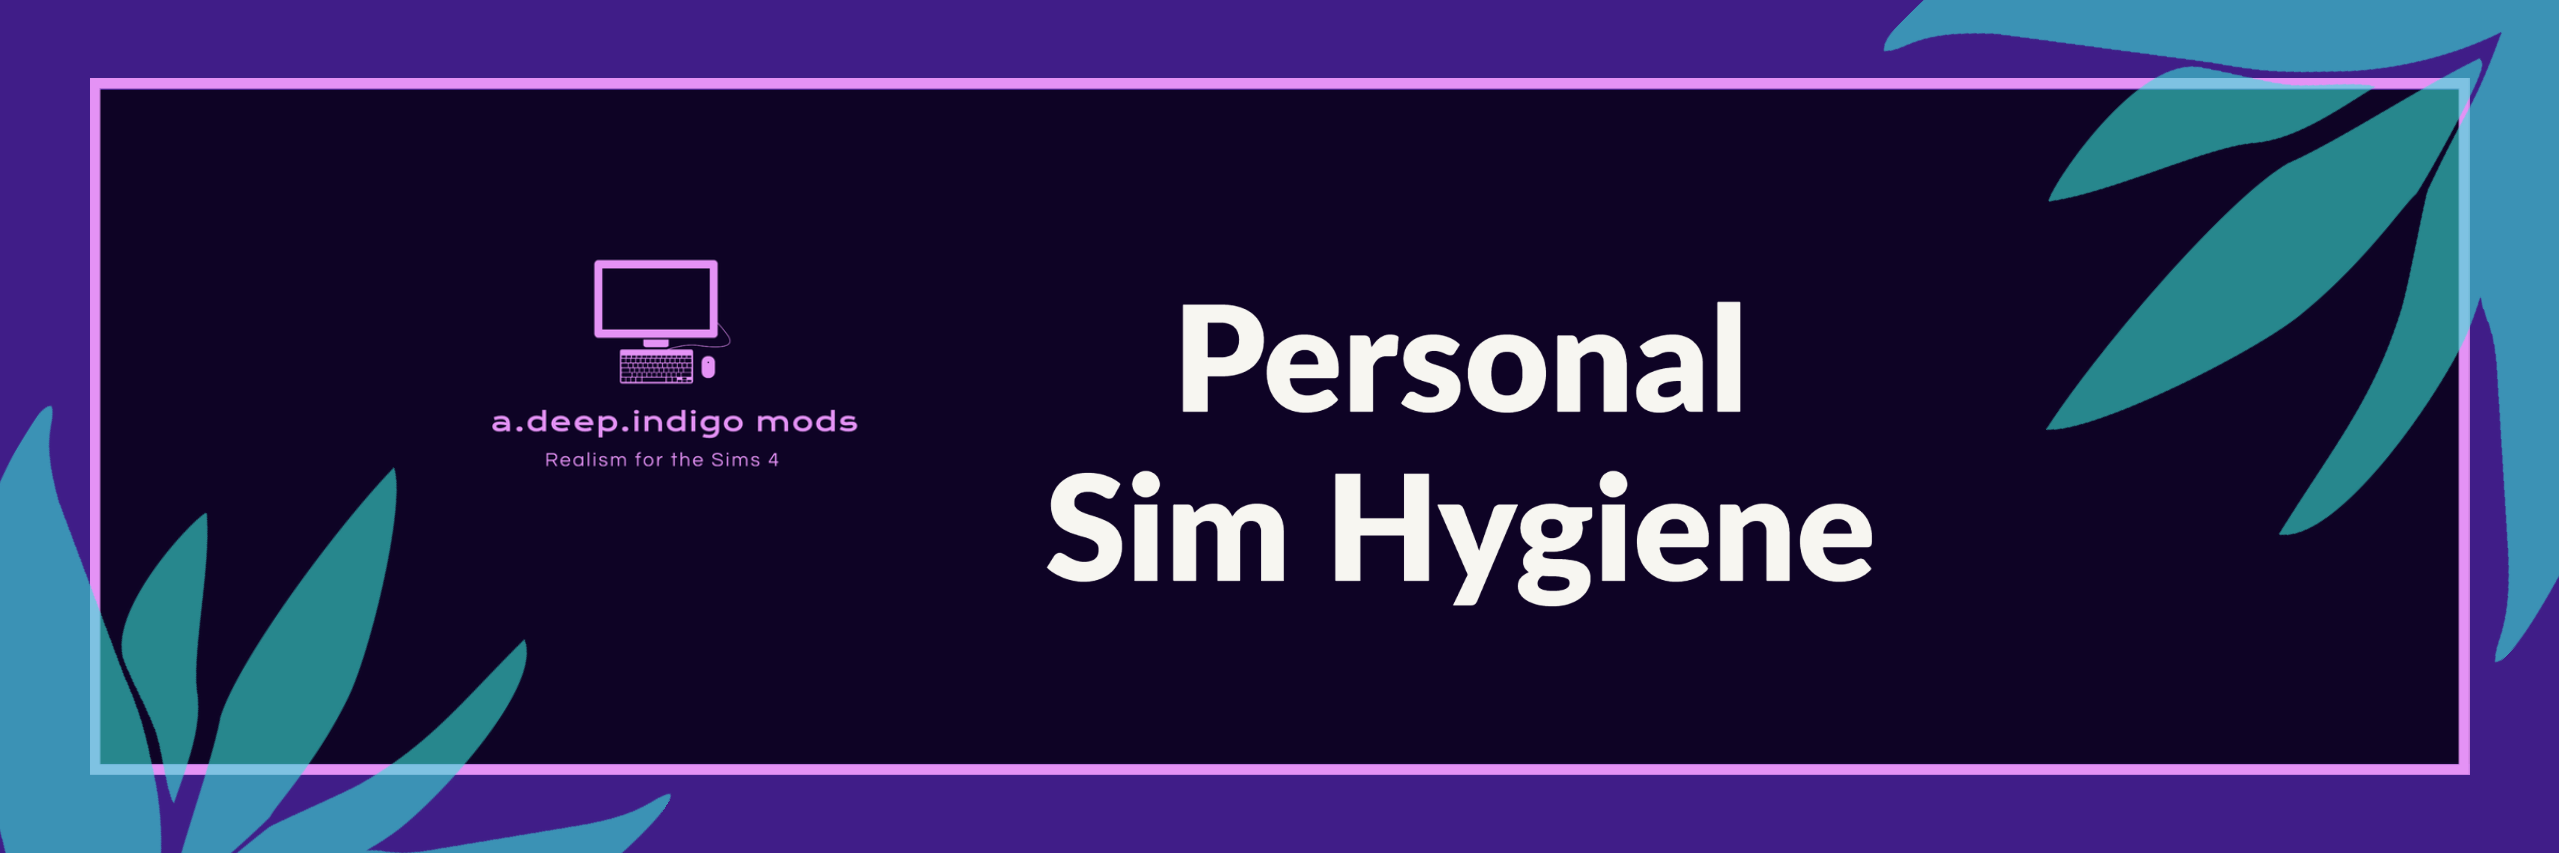 Personal Sim Hygiene